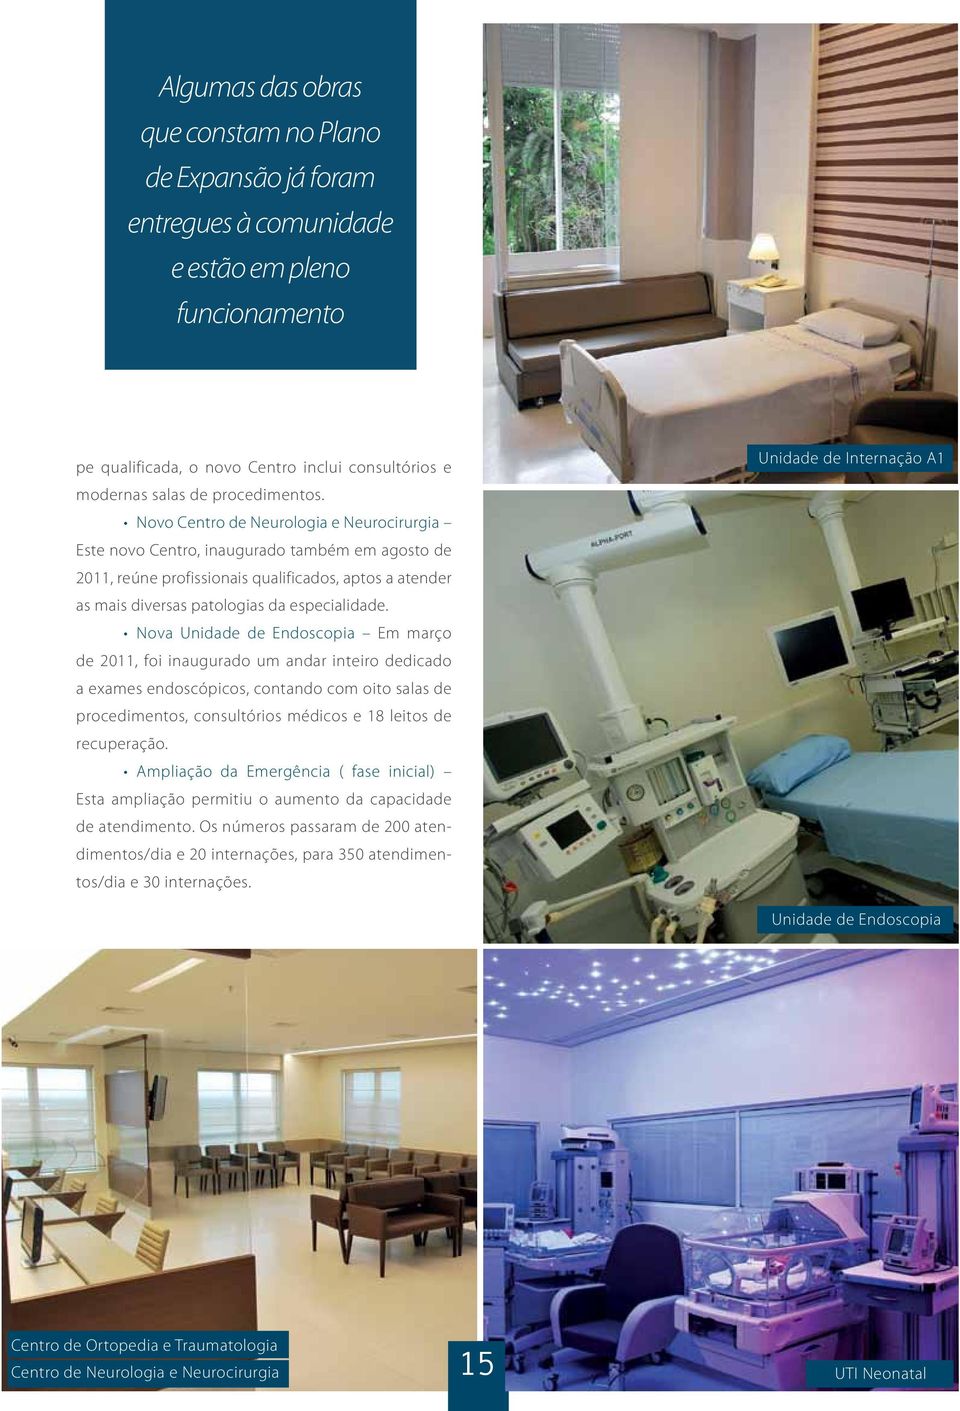 Nova Unidade de Endoscopia Em março de 2011, foi inaugurado um andar inteiro dedicado a exames endoscópicos, contando com oito salas de procedimentos, consultórios médicos e 18 leitos de recuperação.